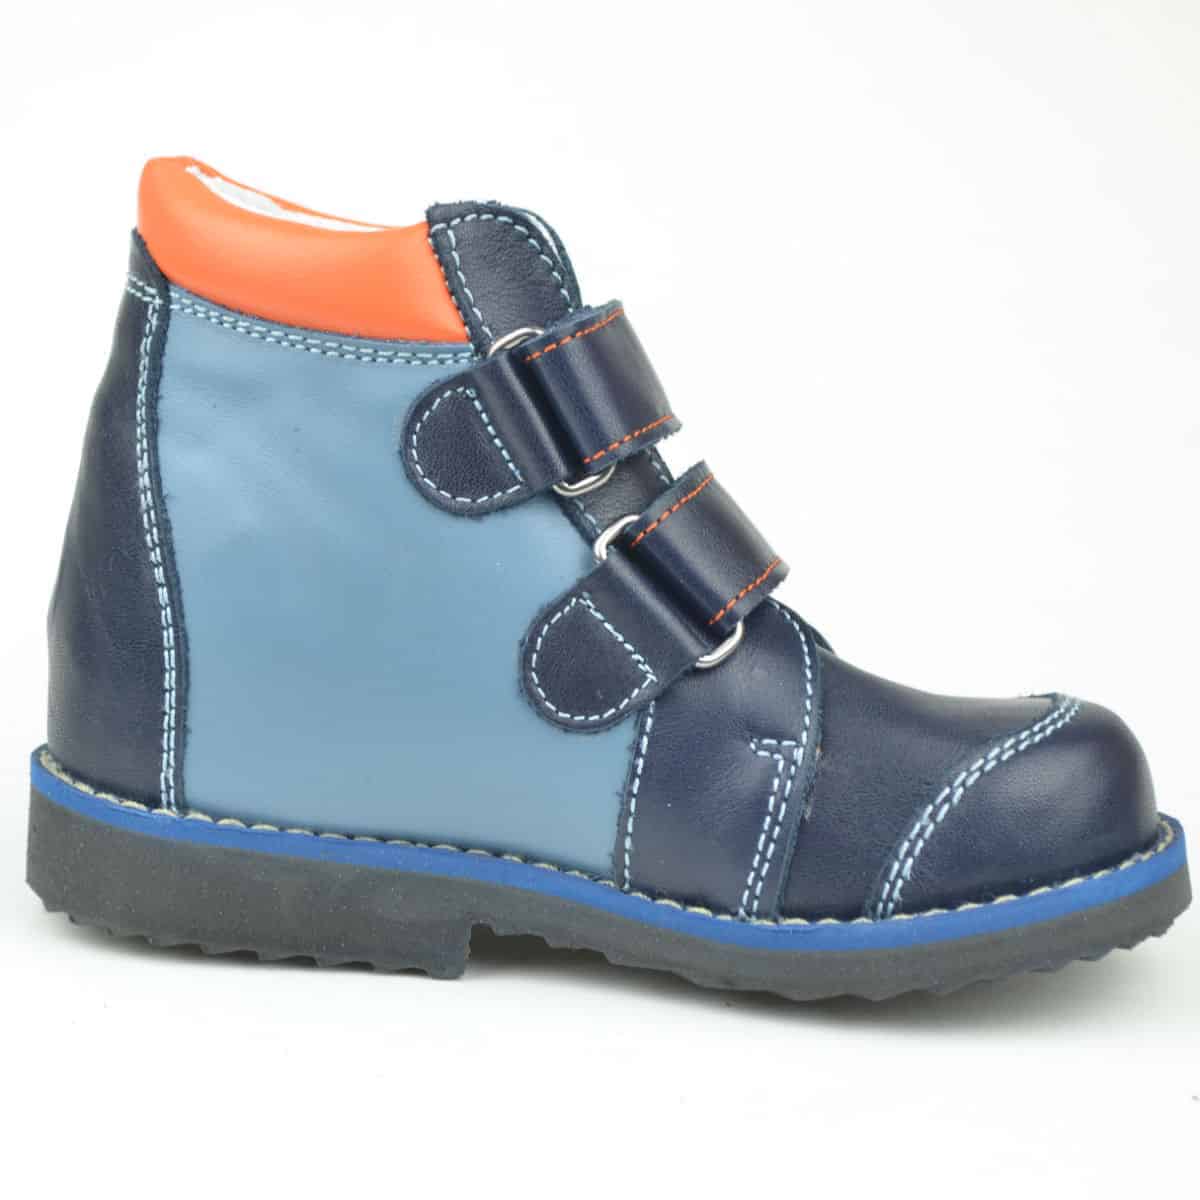 Flo-115  Salus cipő kék színben, fiús - belső oldalról